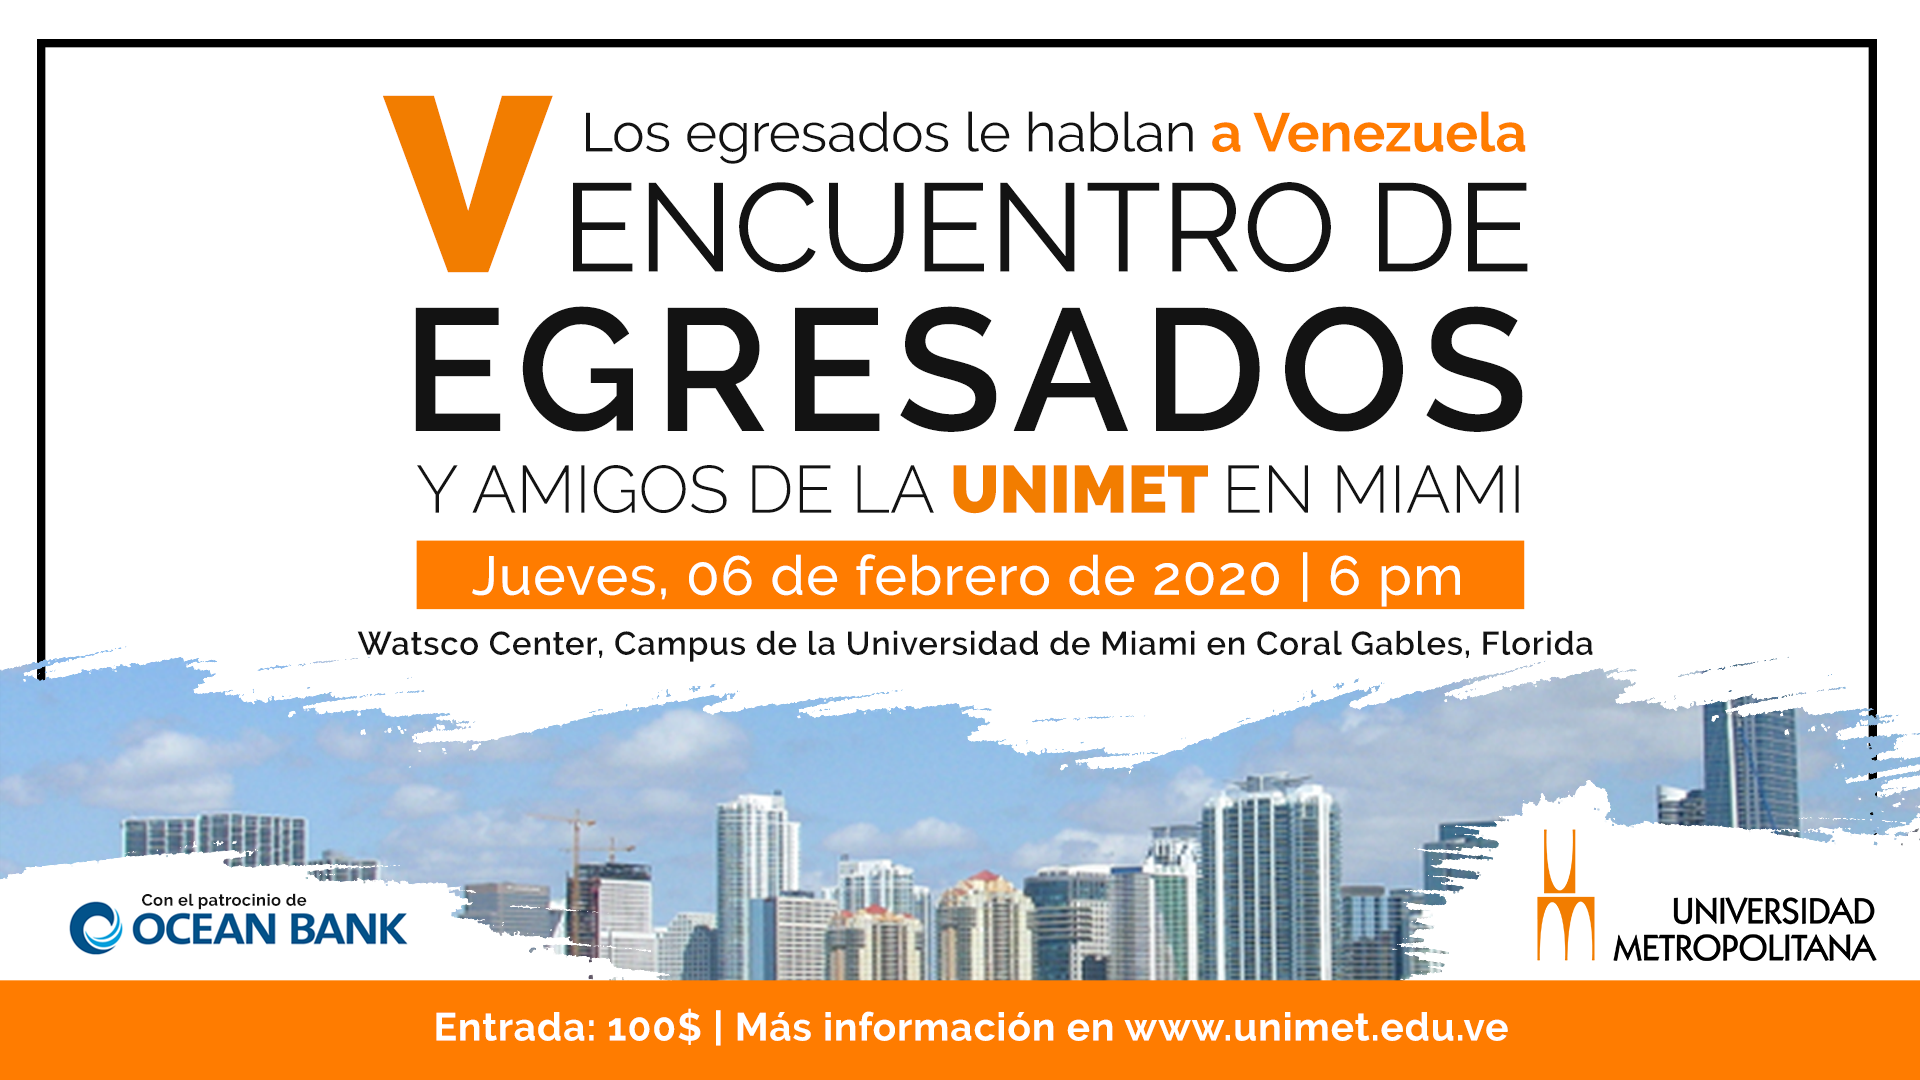 Egresados de la Universidad Metropolitana le hablarán a Venezuela este 6 de febrero en Miami